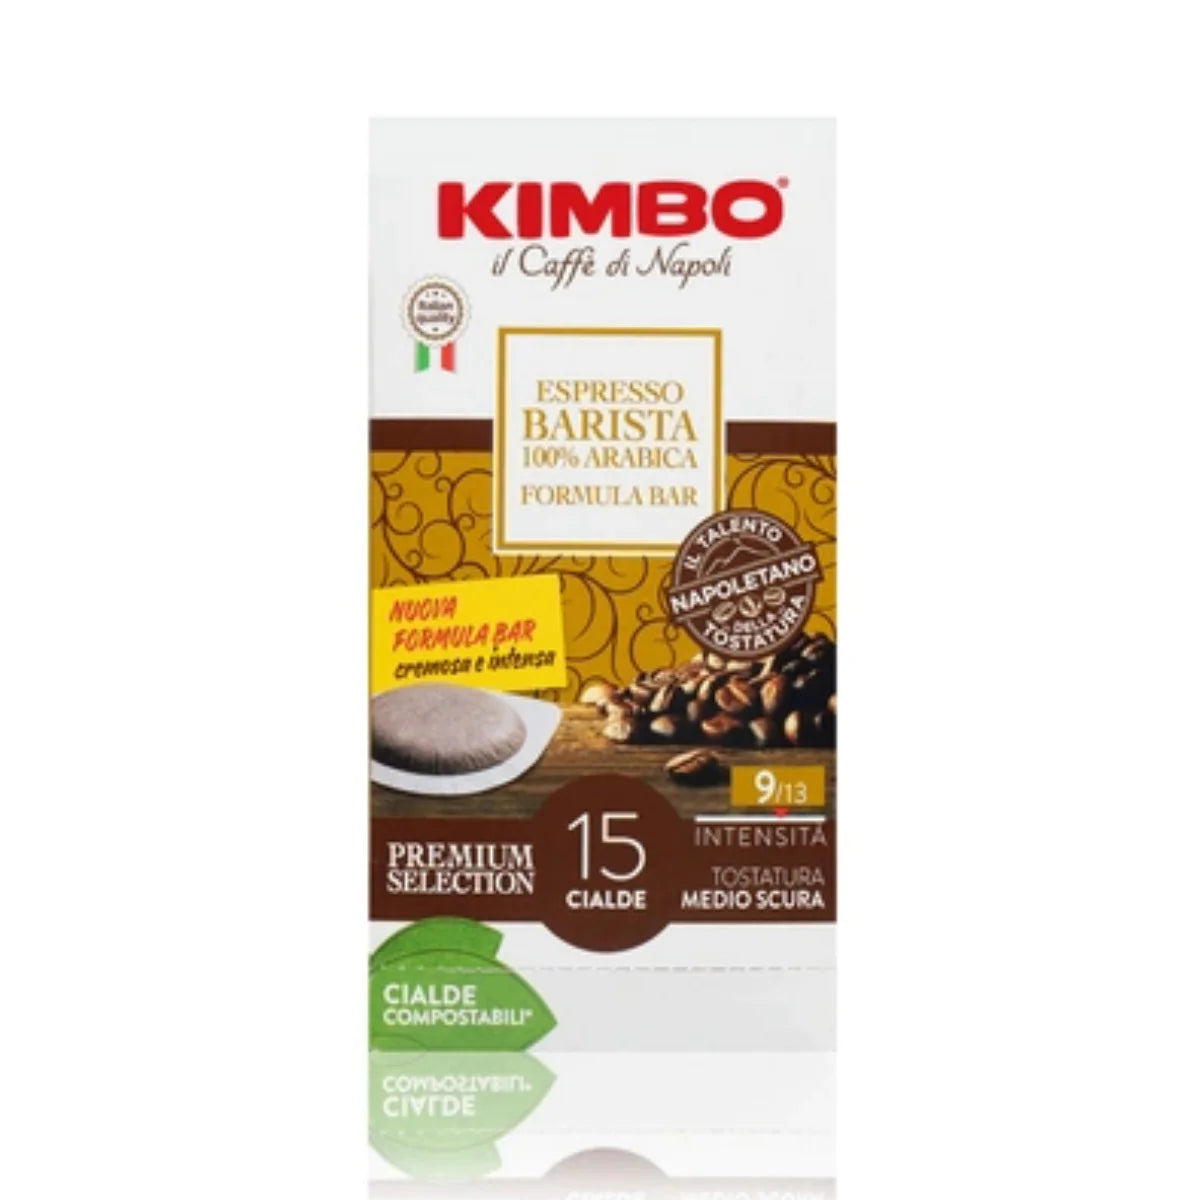 KIMBO - Cialda - Caffè - Barista 100% Arabica - Conf. 15